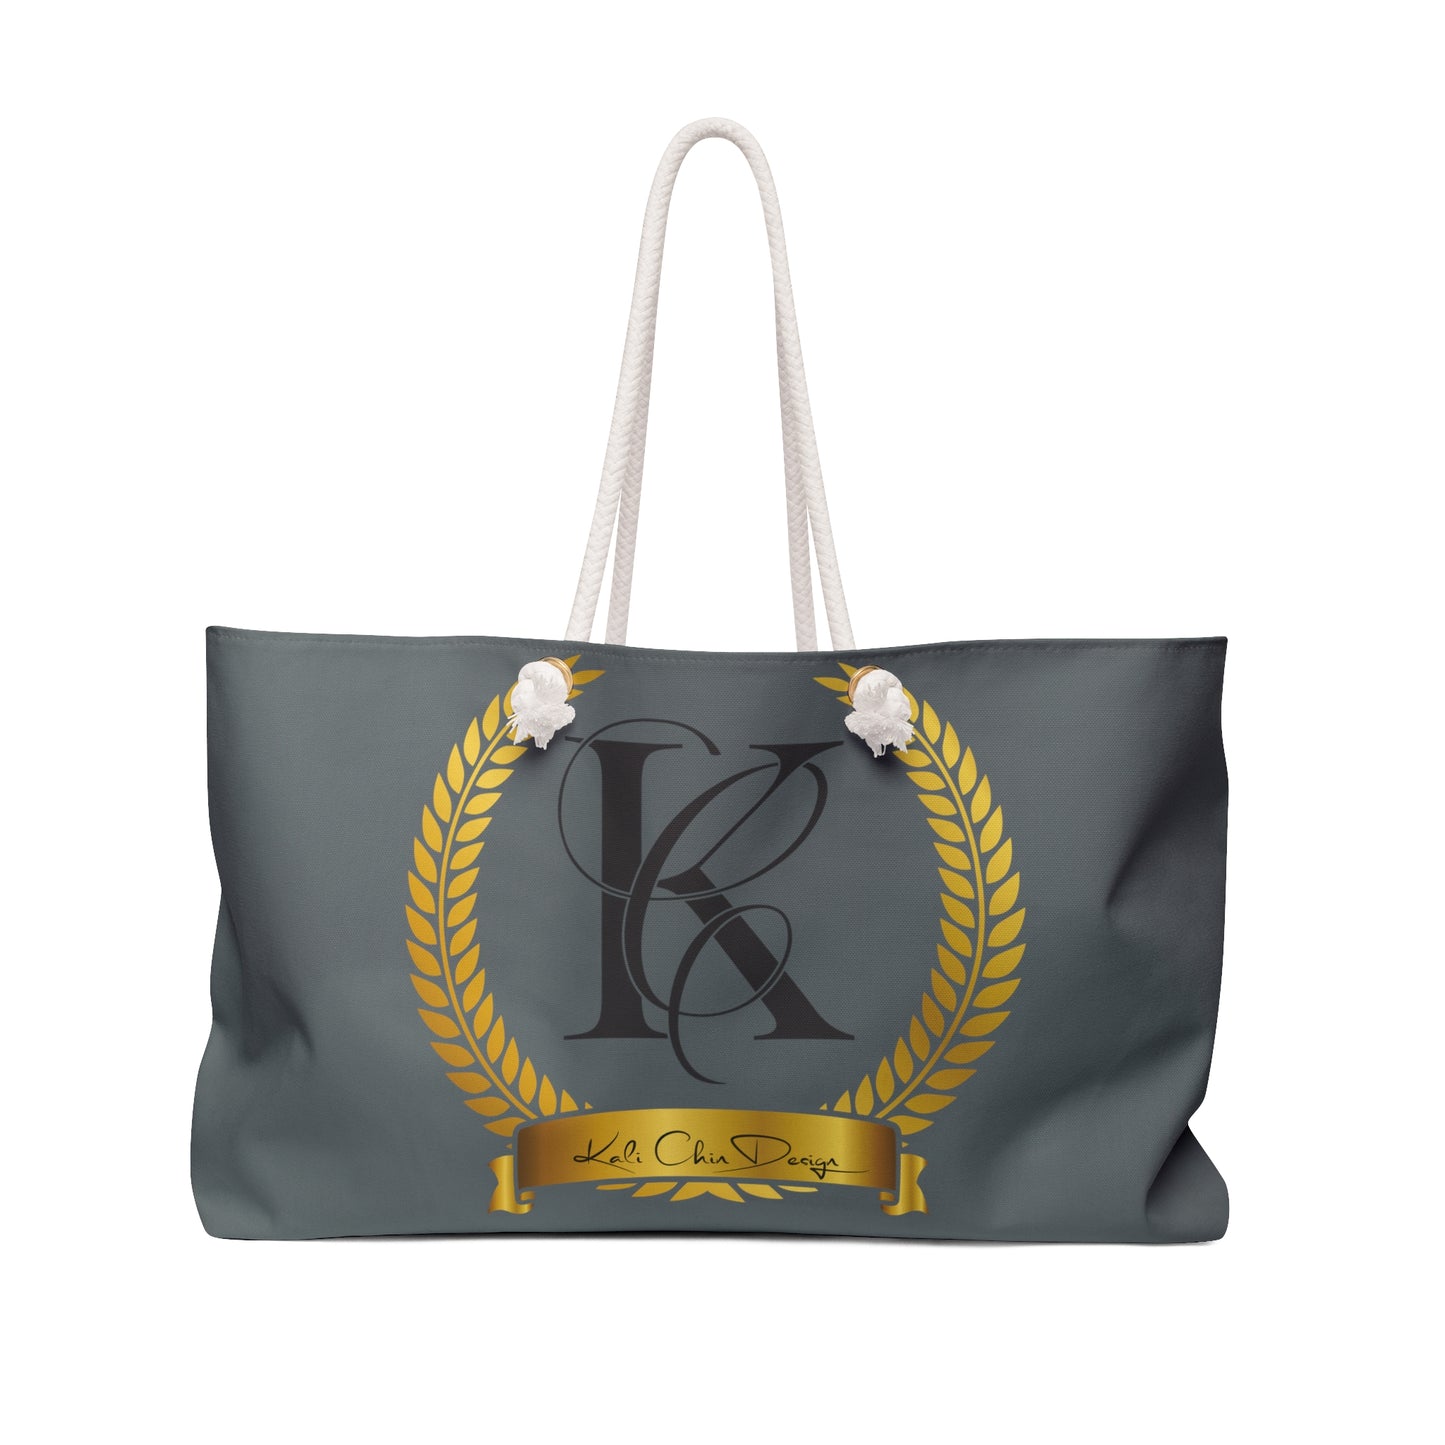 Kali Chin Weekender Bag